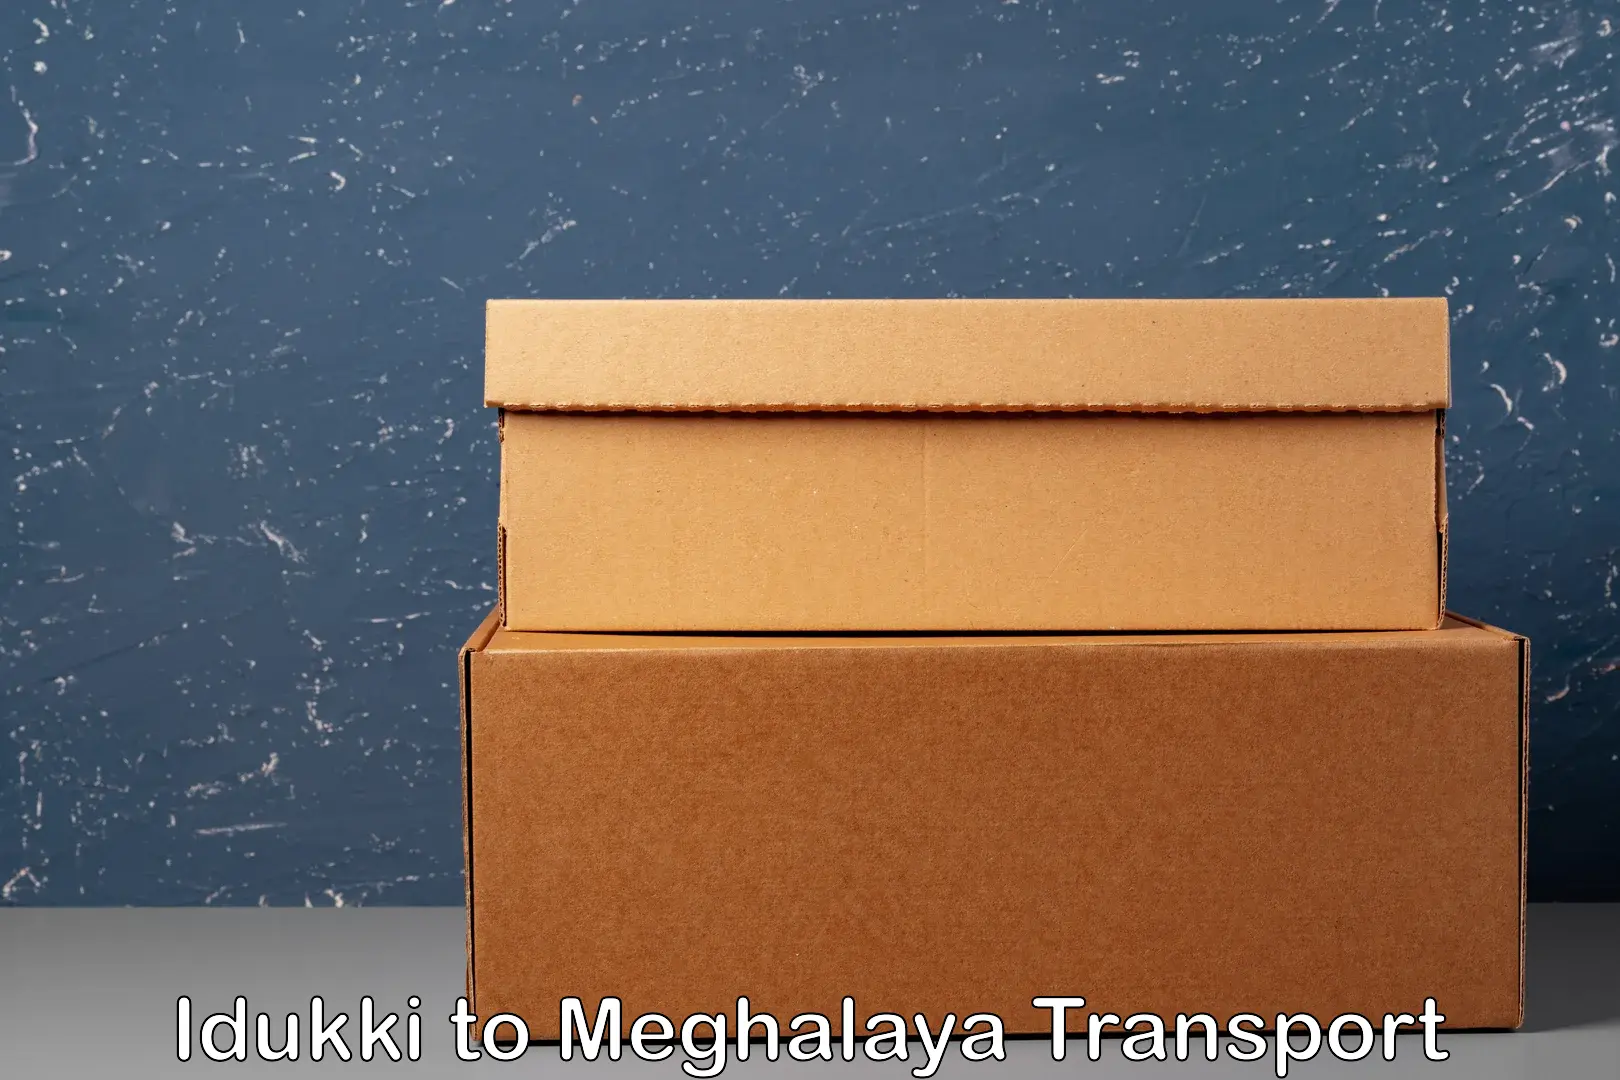 Goods delivery service Idukki to Williamnagar